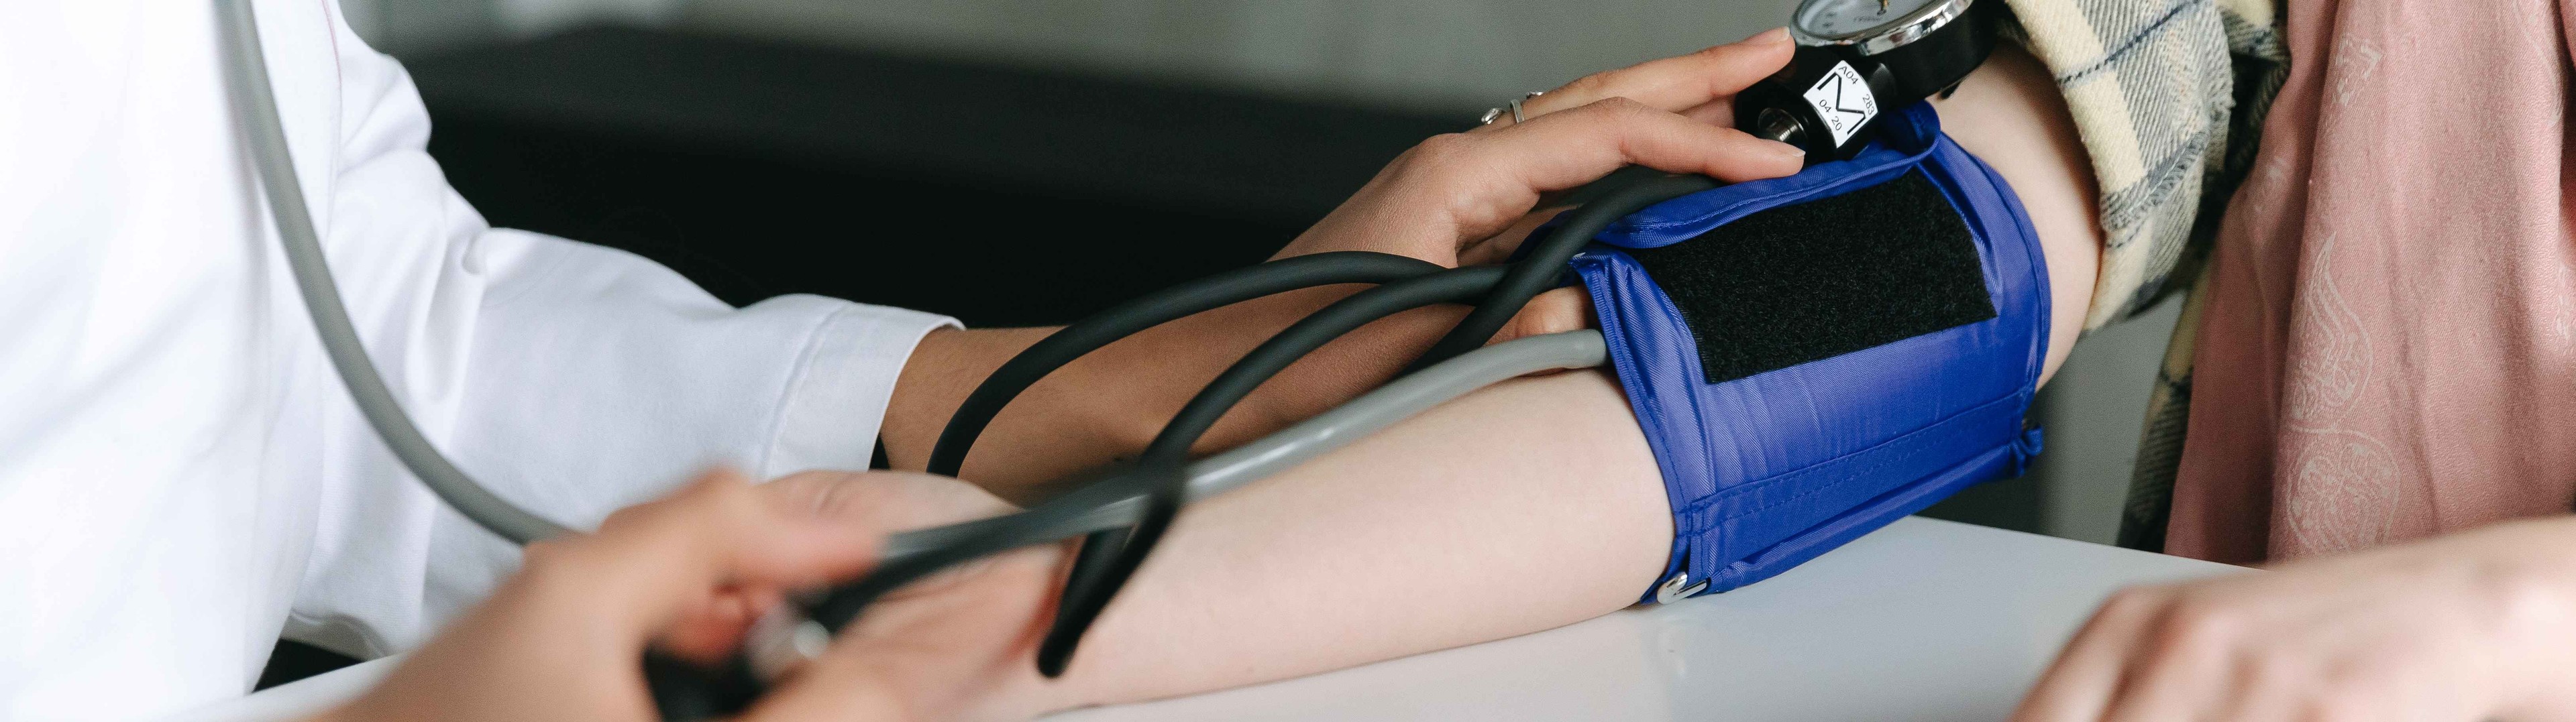 Una presión arterial alta puede acelerar el envejecimiento de los huesos 